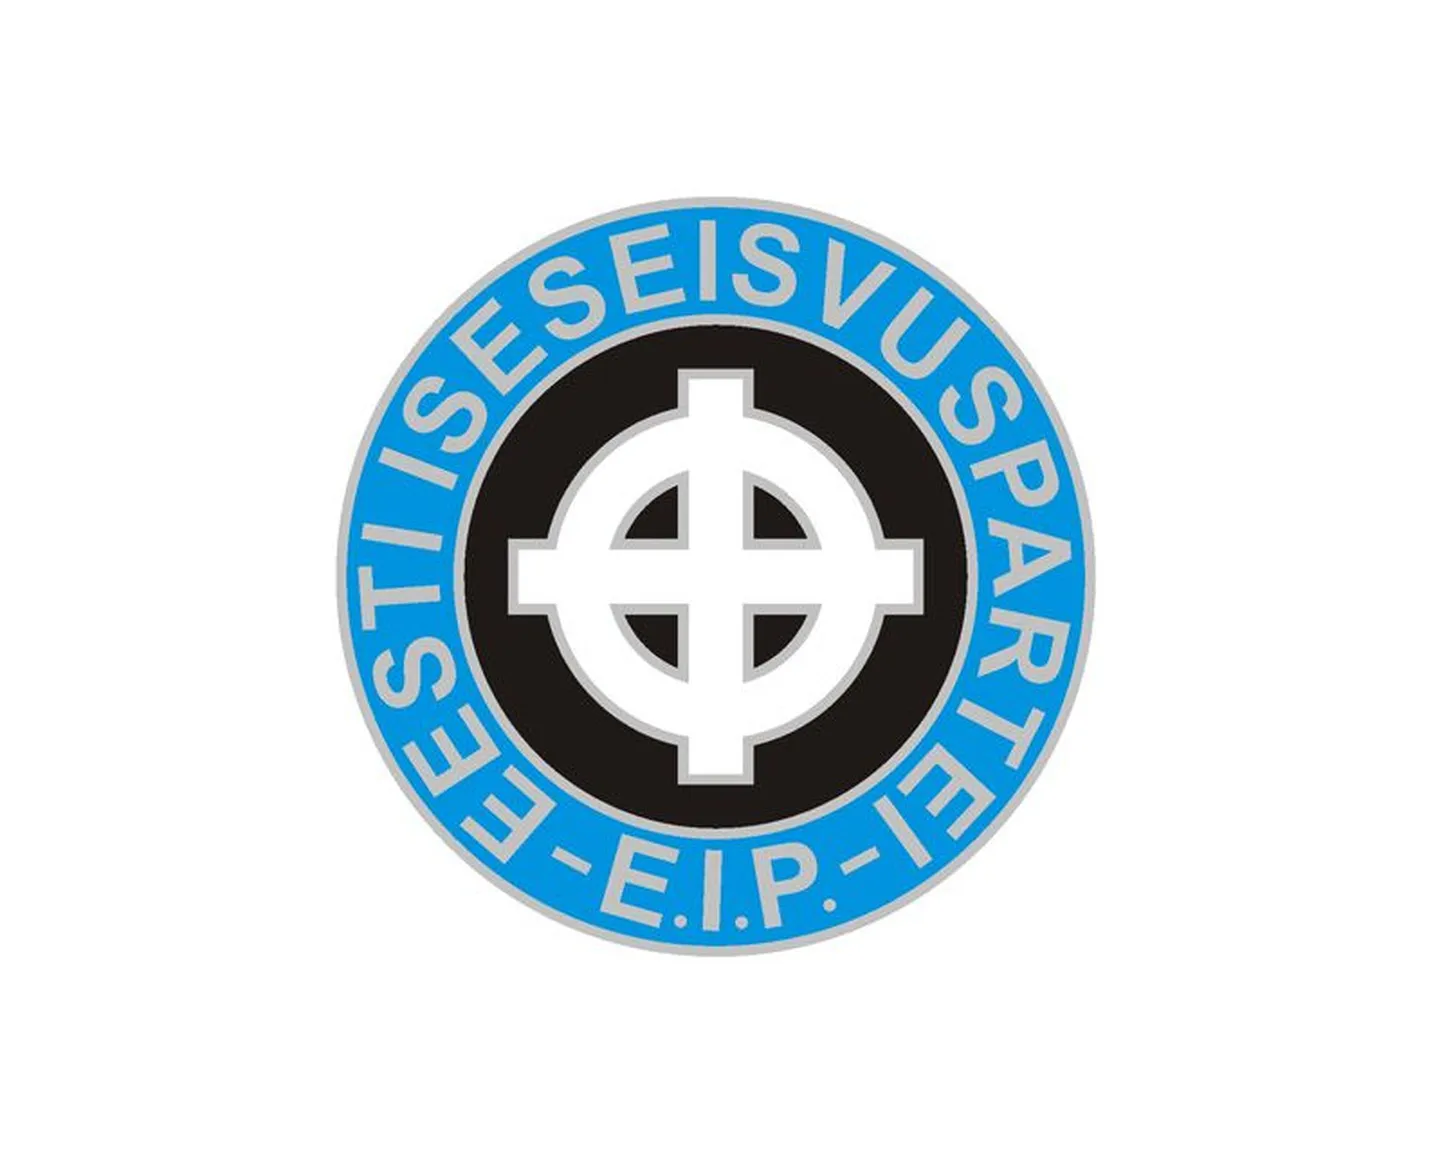 Eesti Iseseisvuspartei